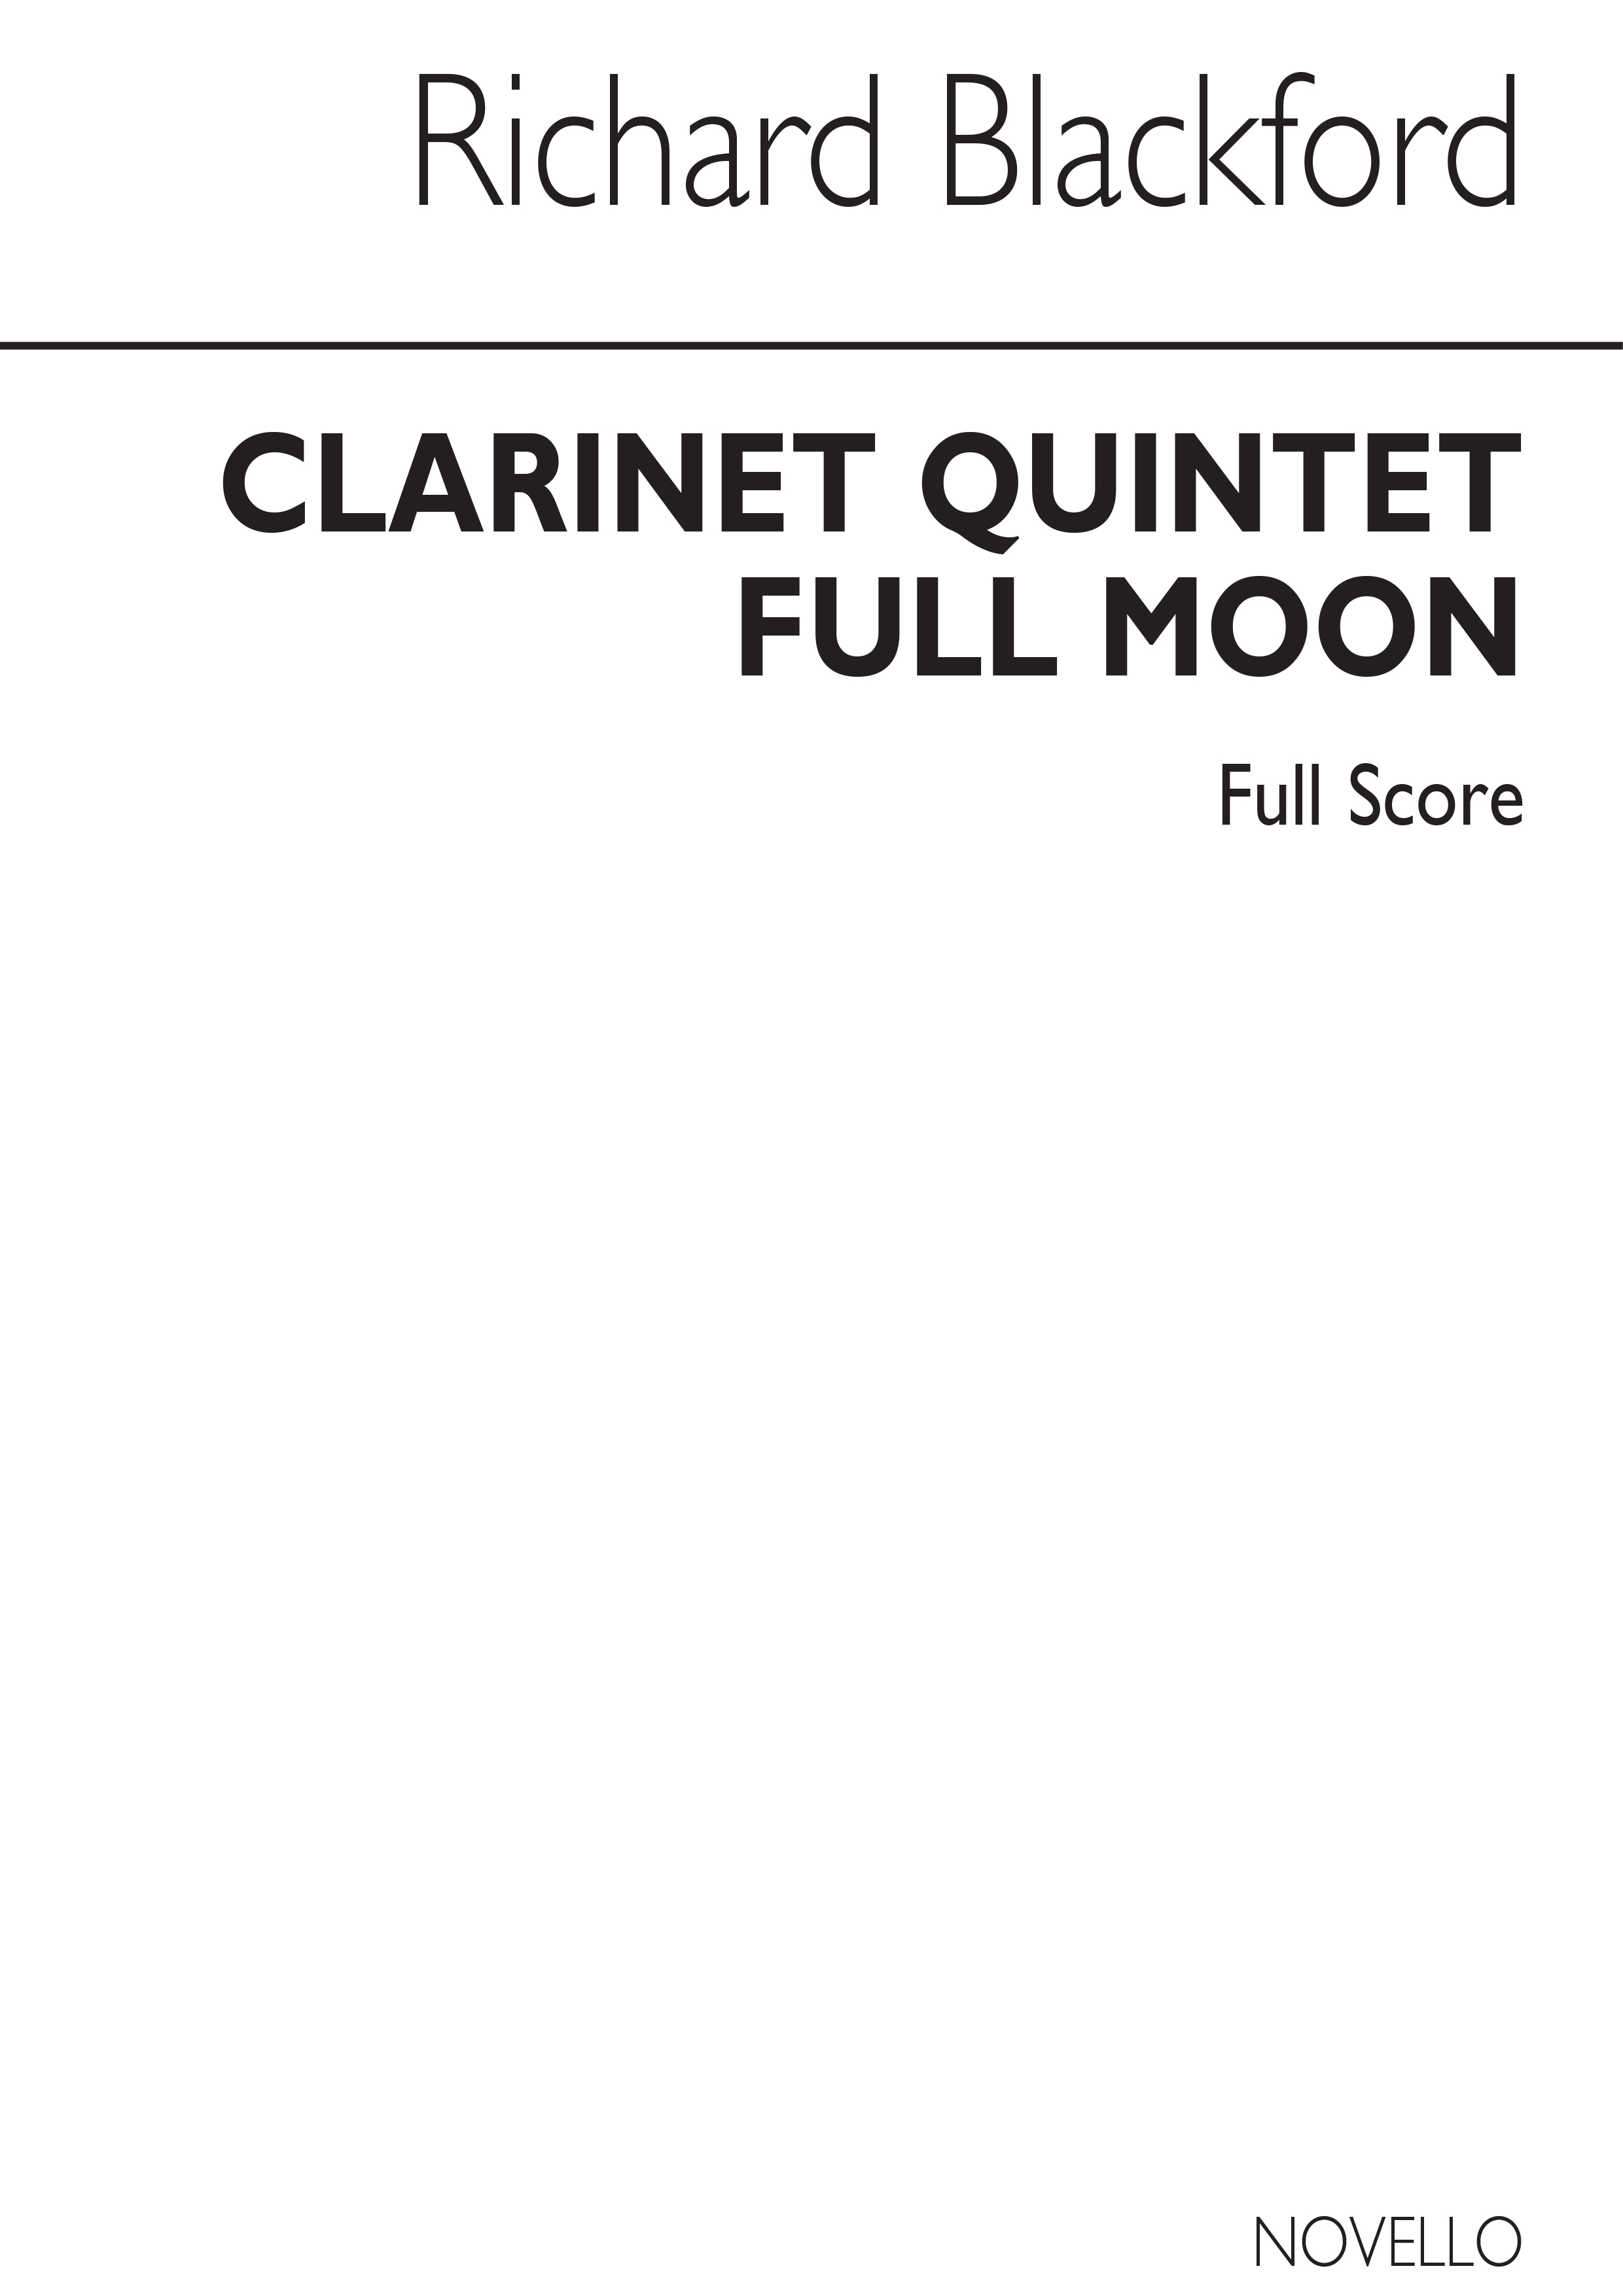 Richard Blackford: Full Moon - Clarinet Quintet (Score)